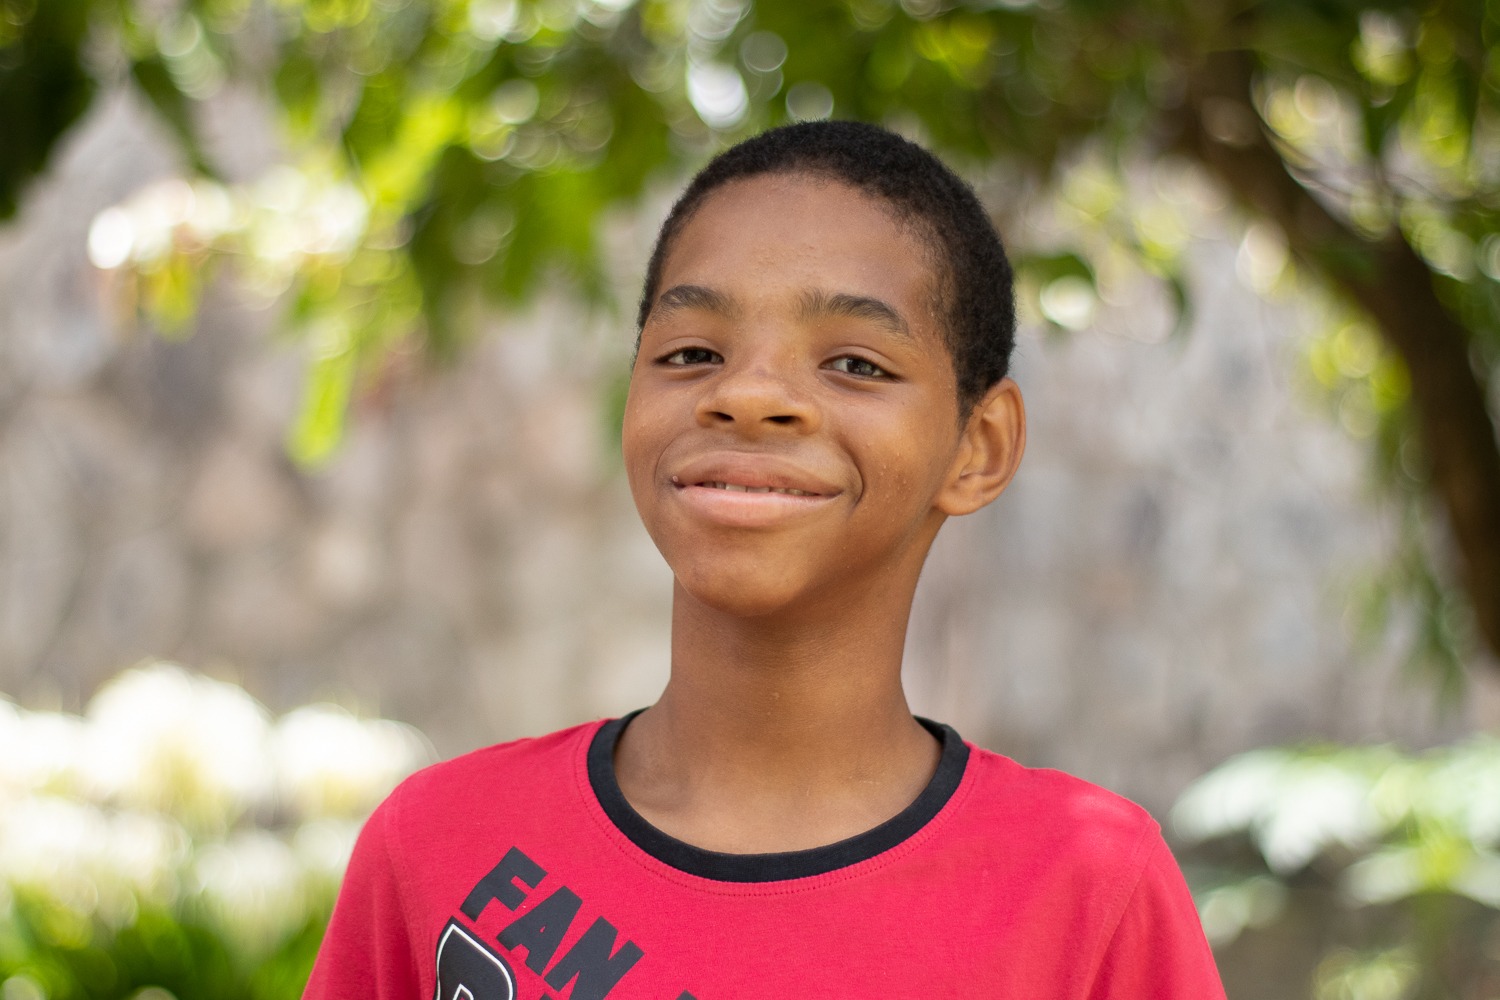 Projeto quer ajudar 18 crianças com dificuldades de aprendizagem em Cabo Verde